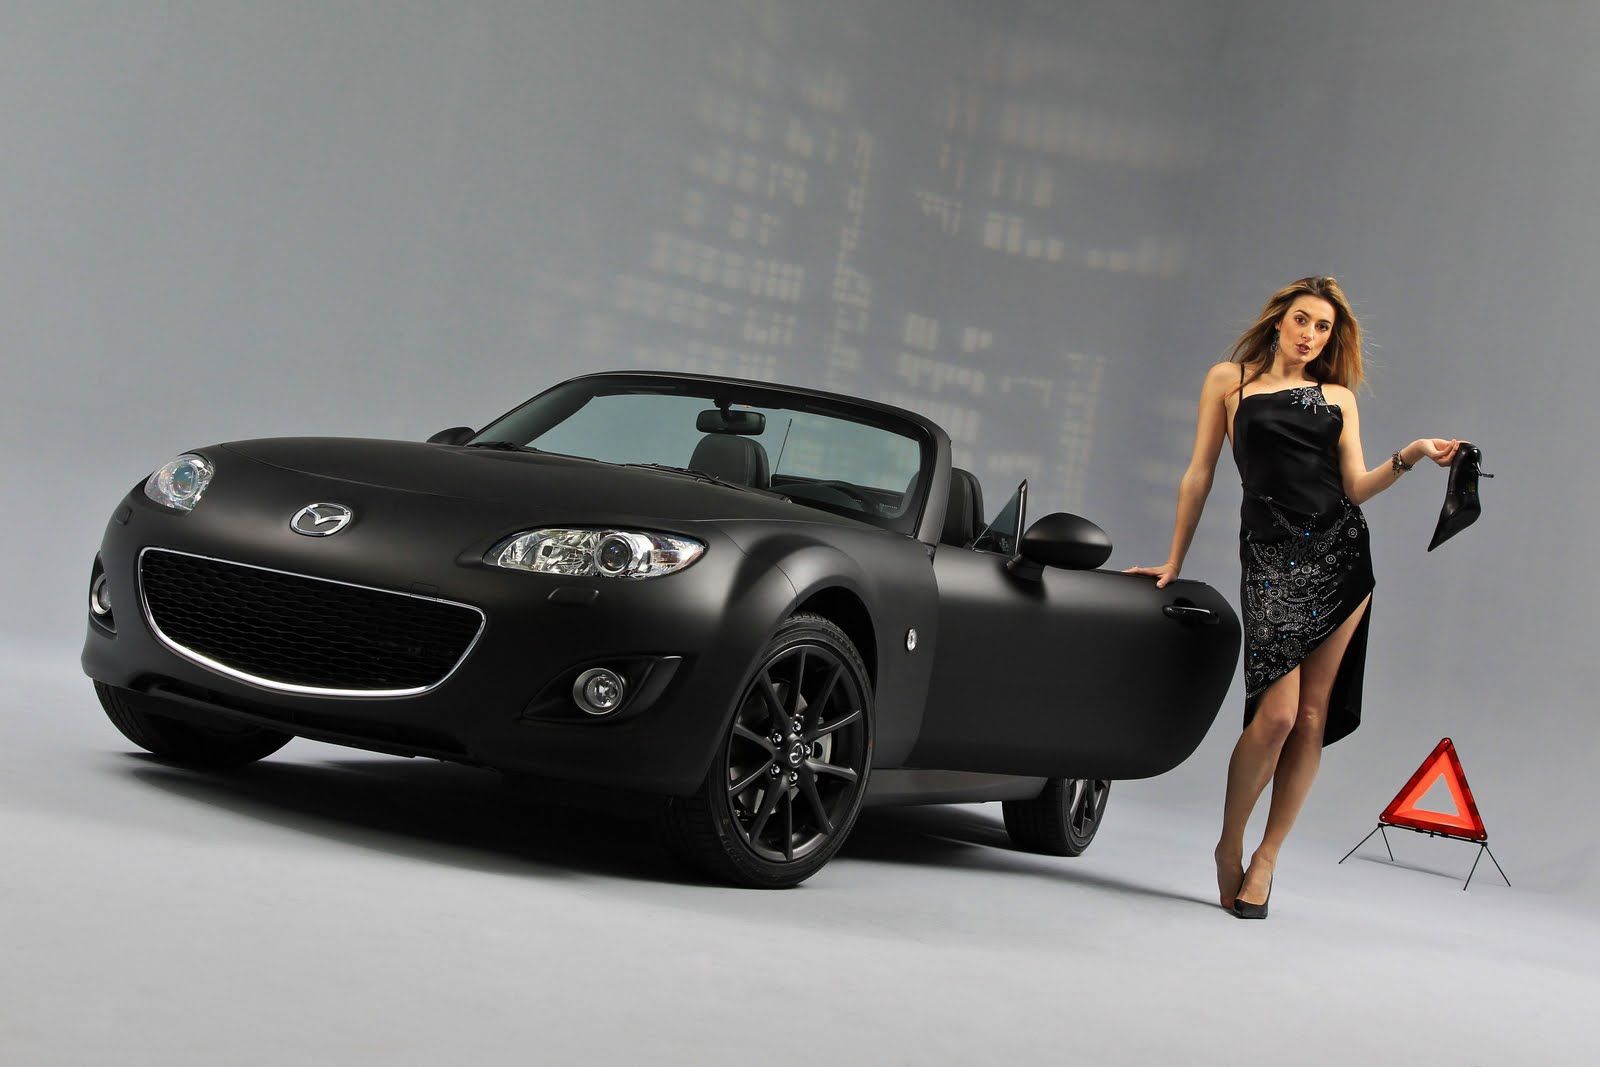 2010 Mazda MX-5 Black & Matte Edition